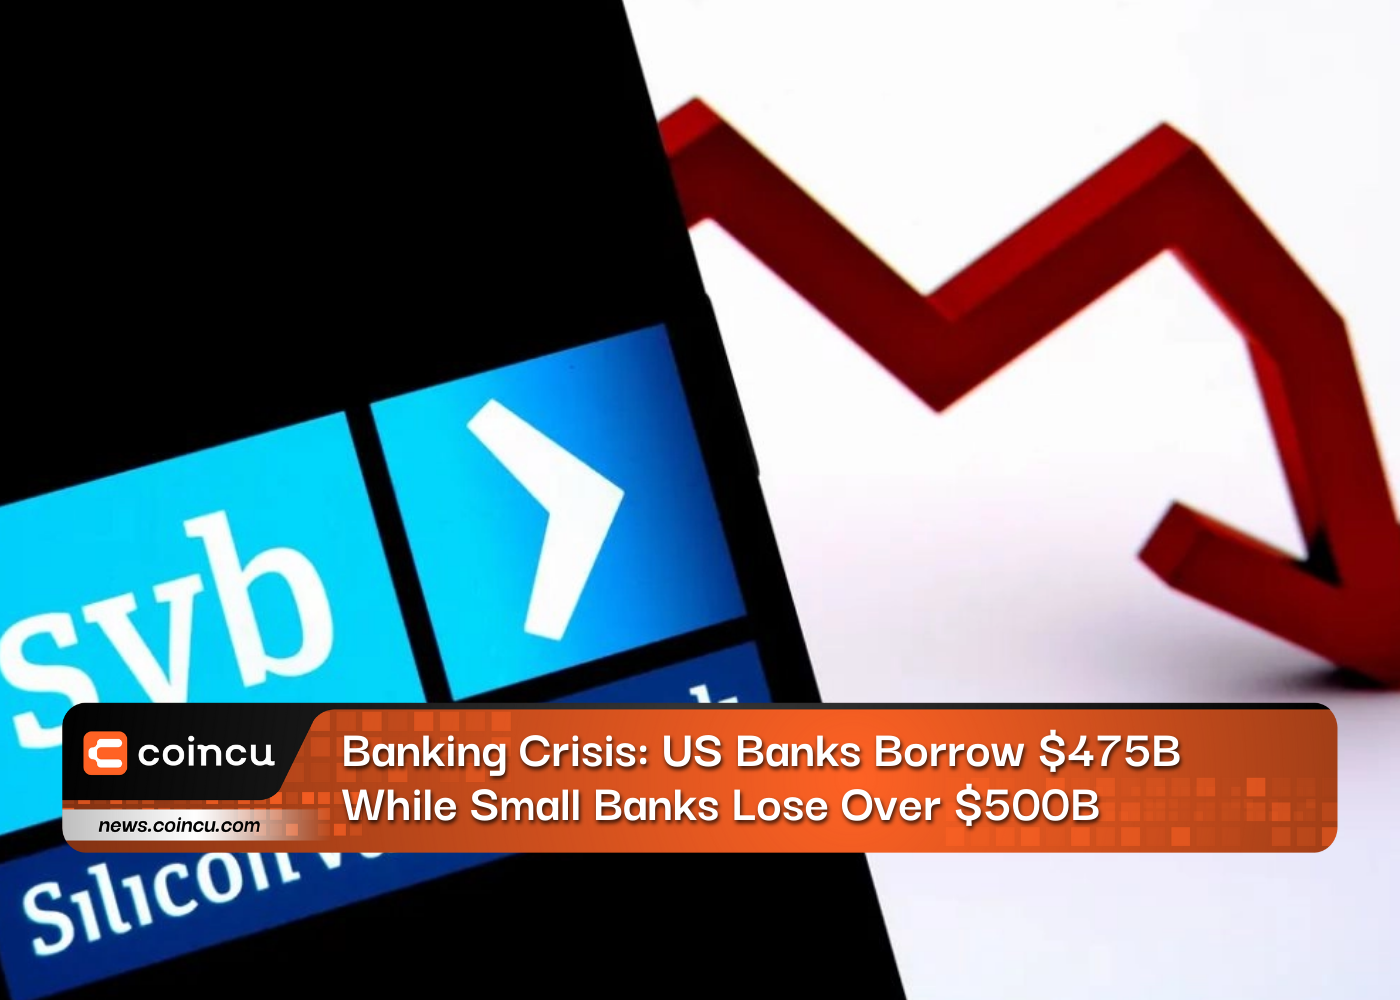 銀行危機：米国の銀行は475億ドルを借り入れ、小規模銀行は500億ドル以上を損失